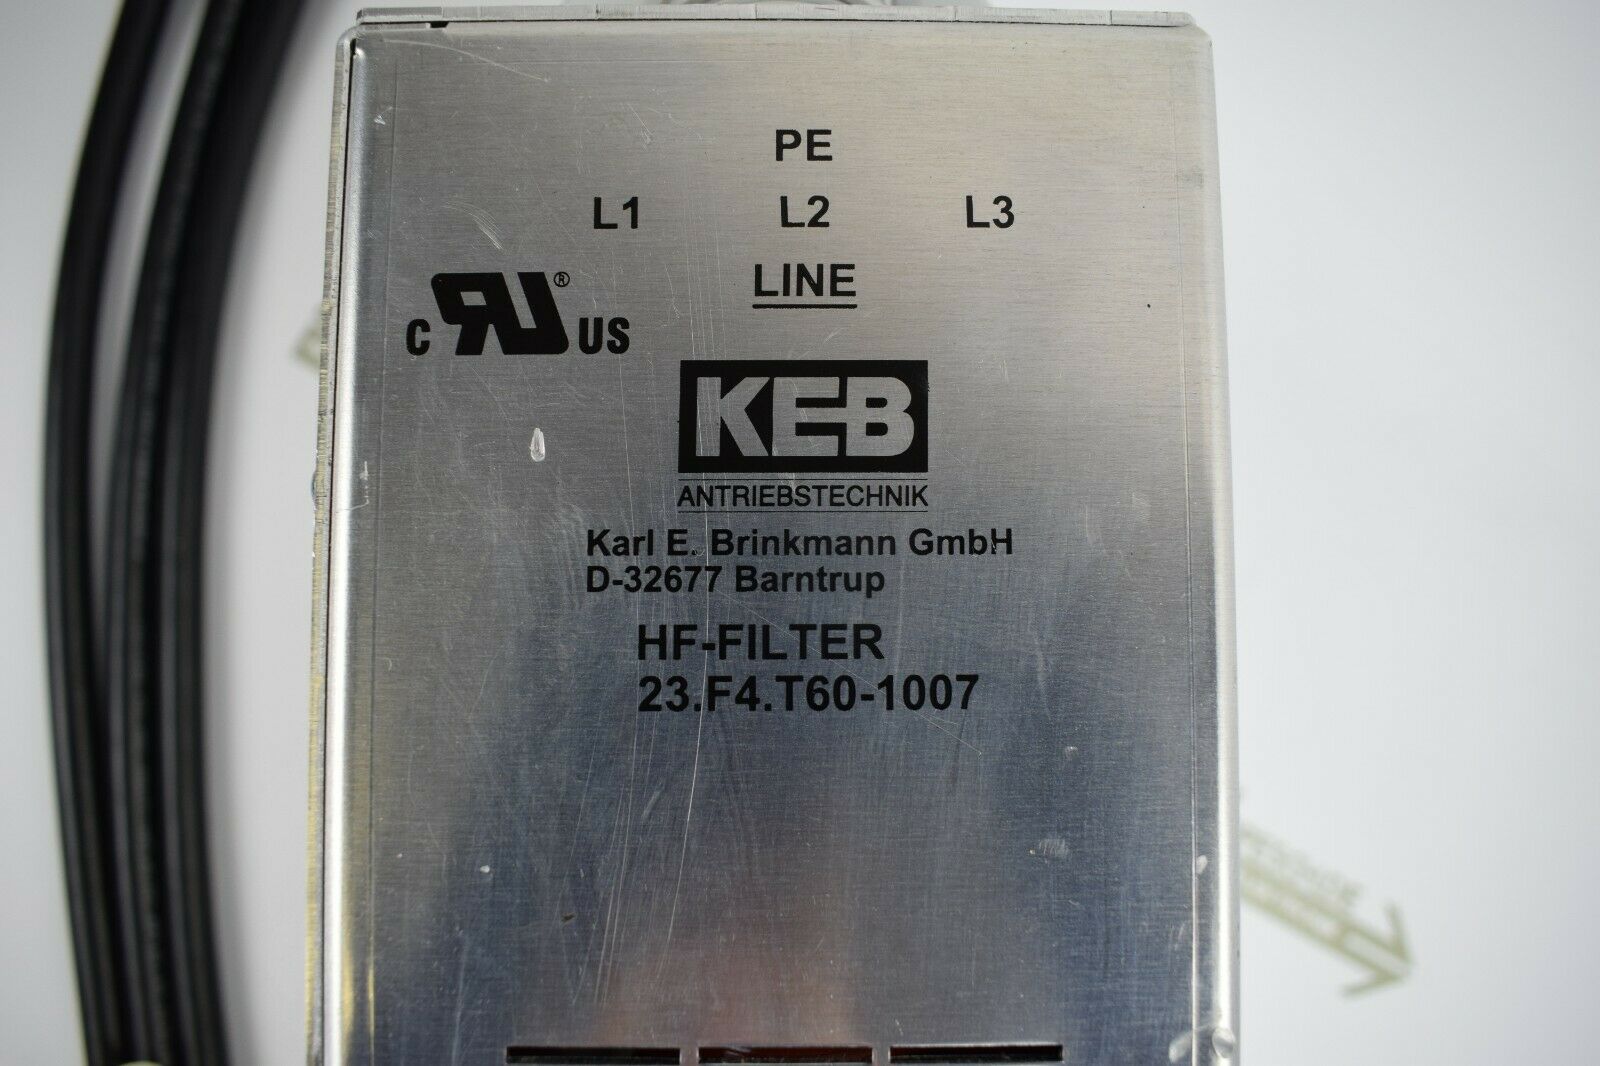 KEB HF-Filter 23.F4.T60-1007